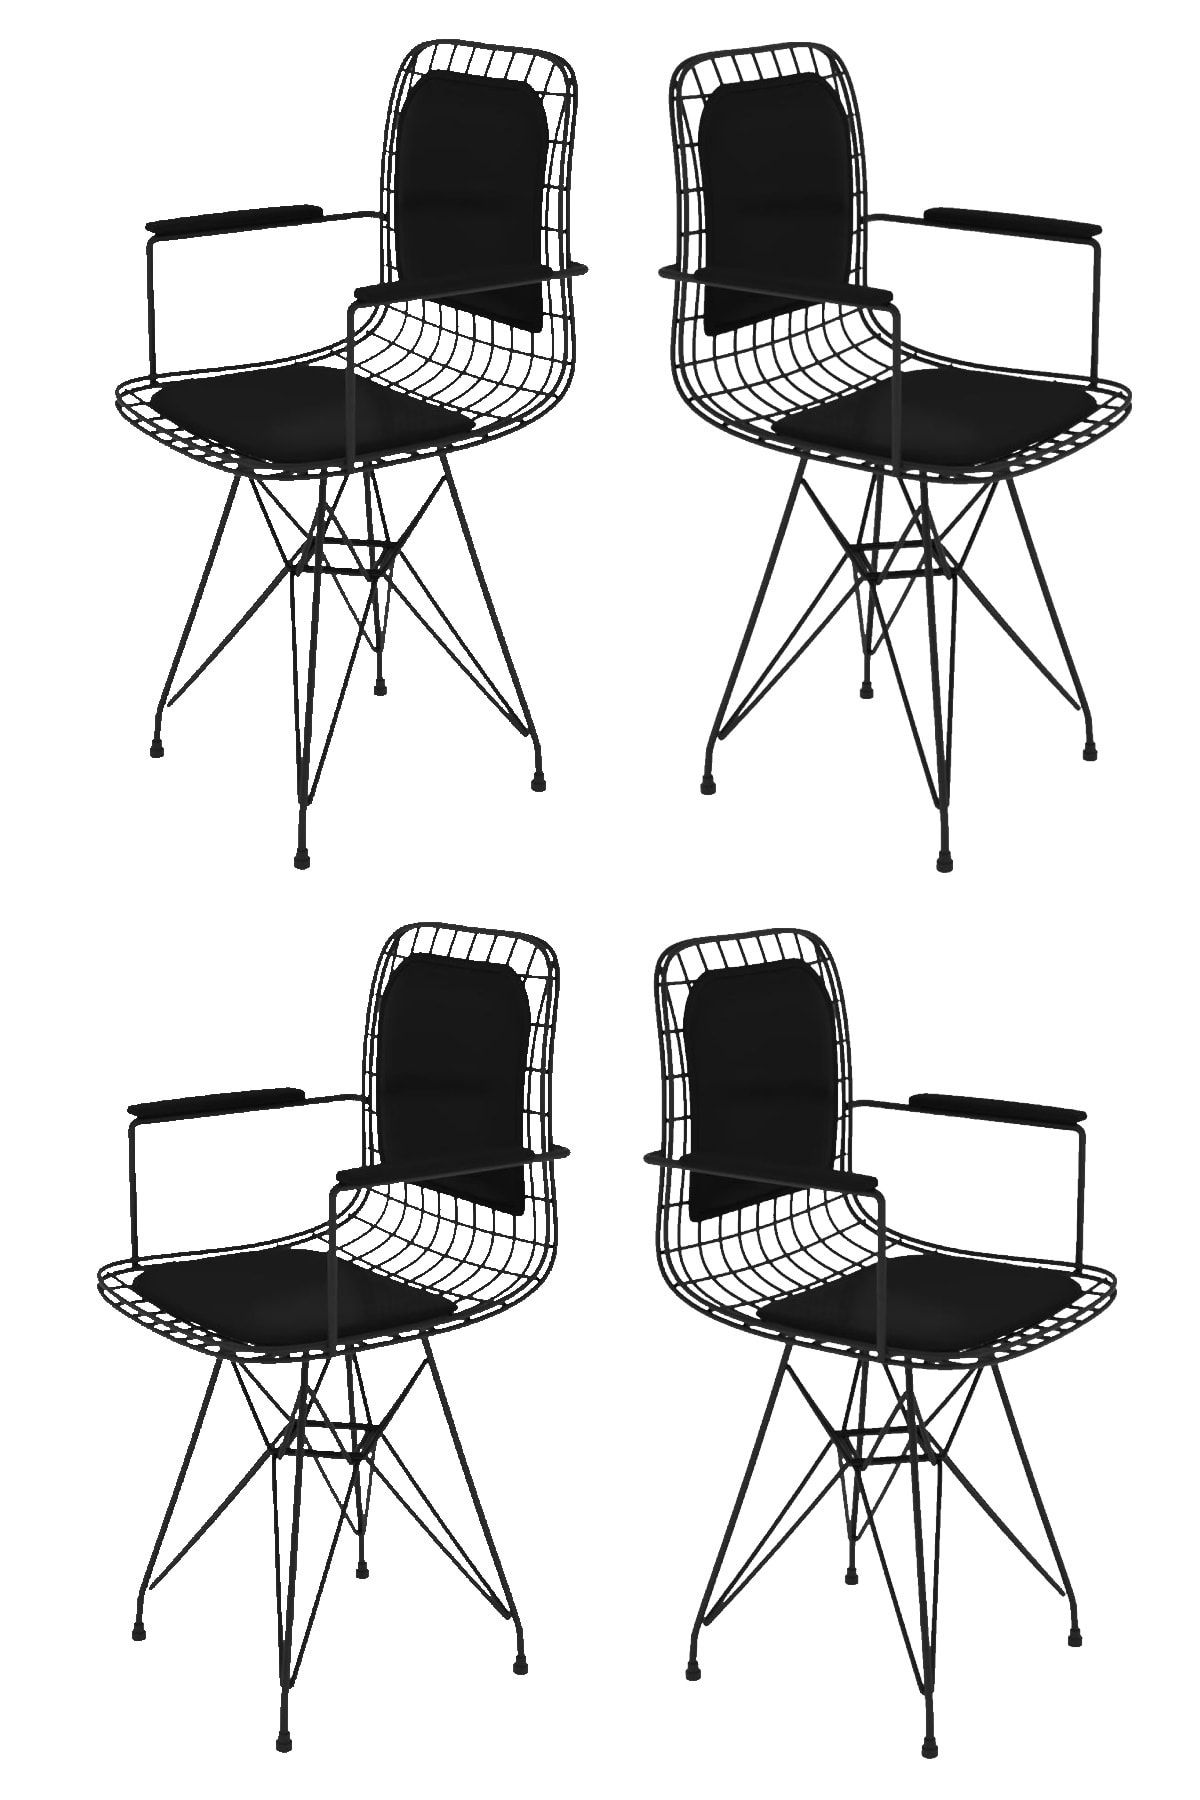 Kenzlife Knsz kafes tel sandalyesi 4 lü mazlum syhsyh kolçaklı sırt minderli ofis cafe bahçe mutfak